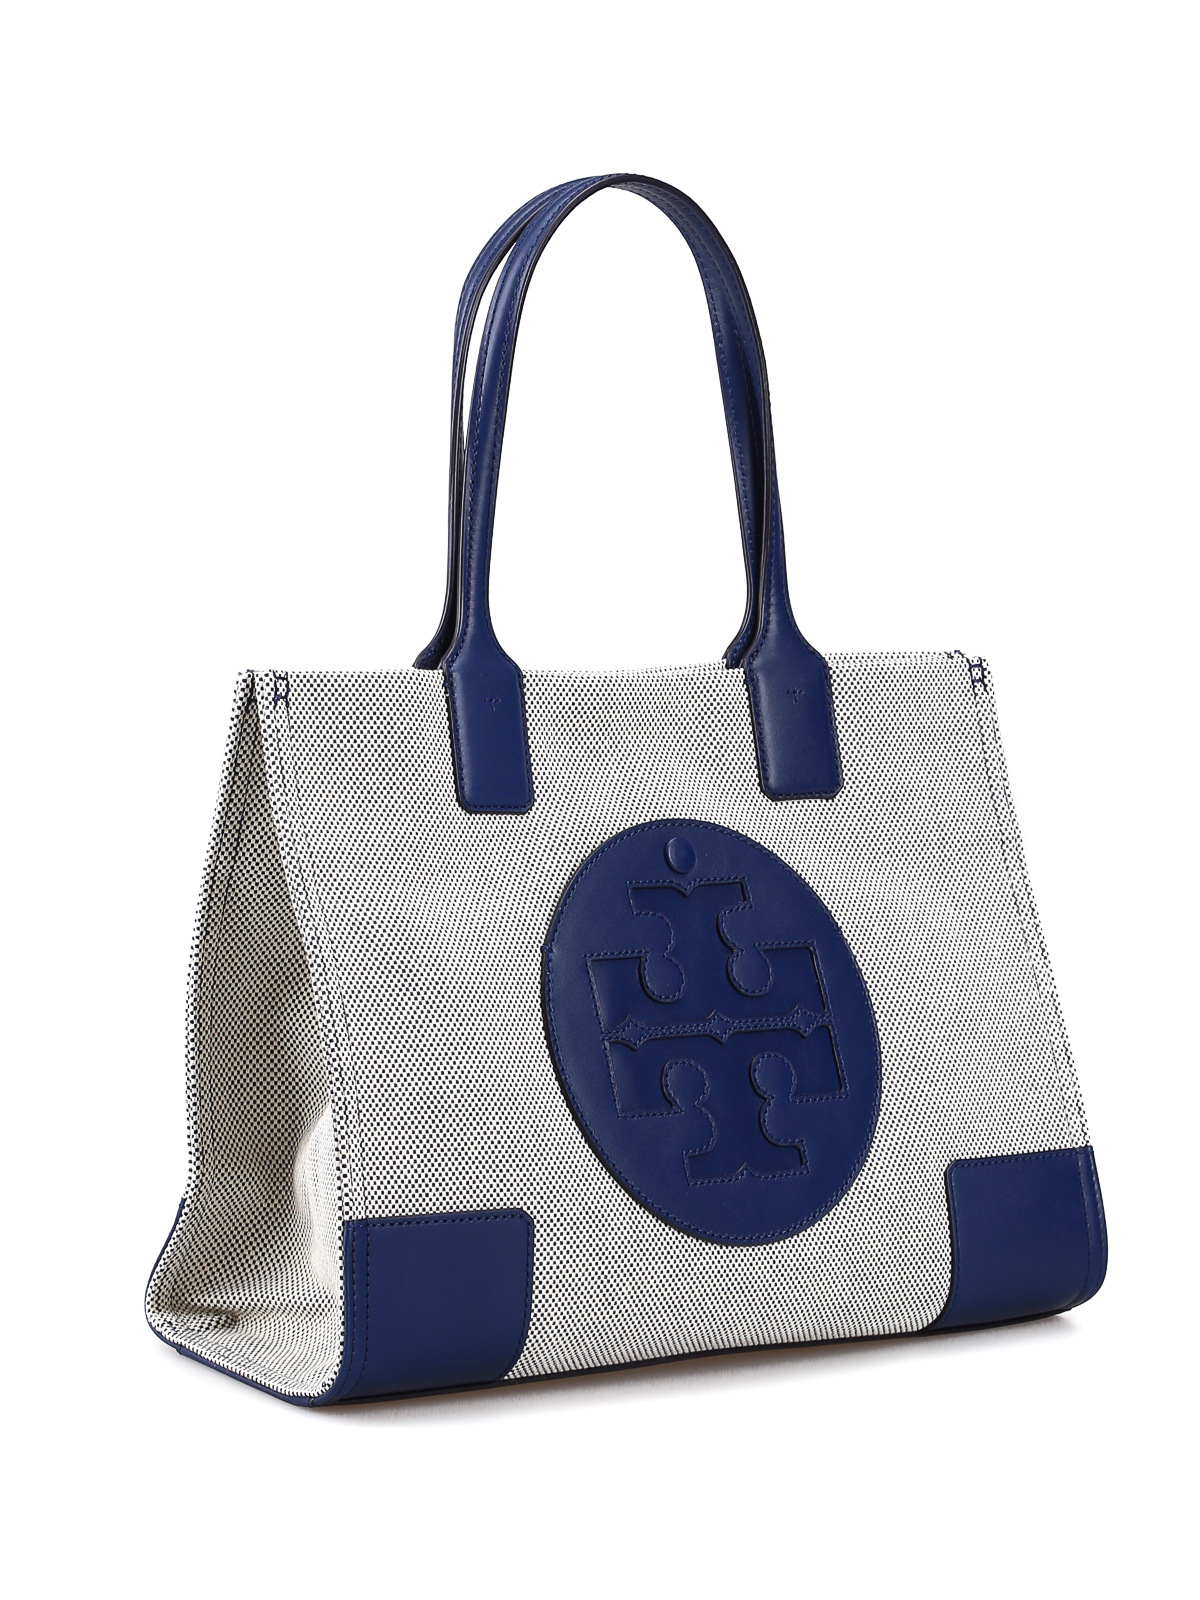 Totes bags Tory Burch - Ella maxi logo blue canvas mini tote bag - 45208410